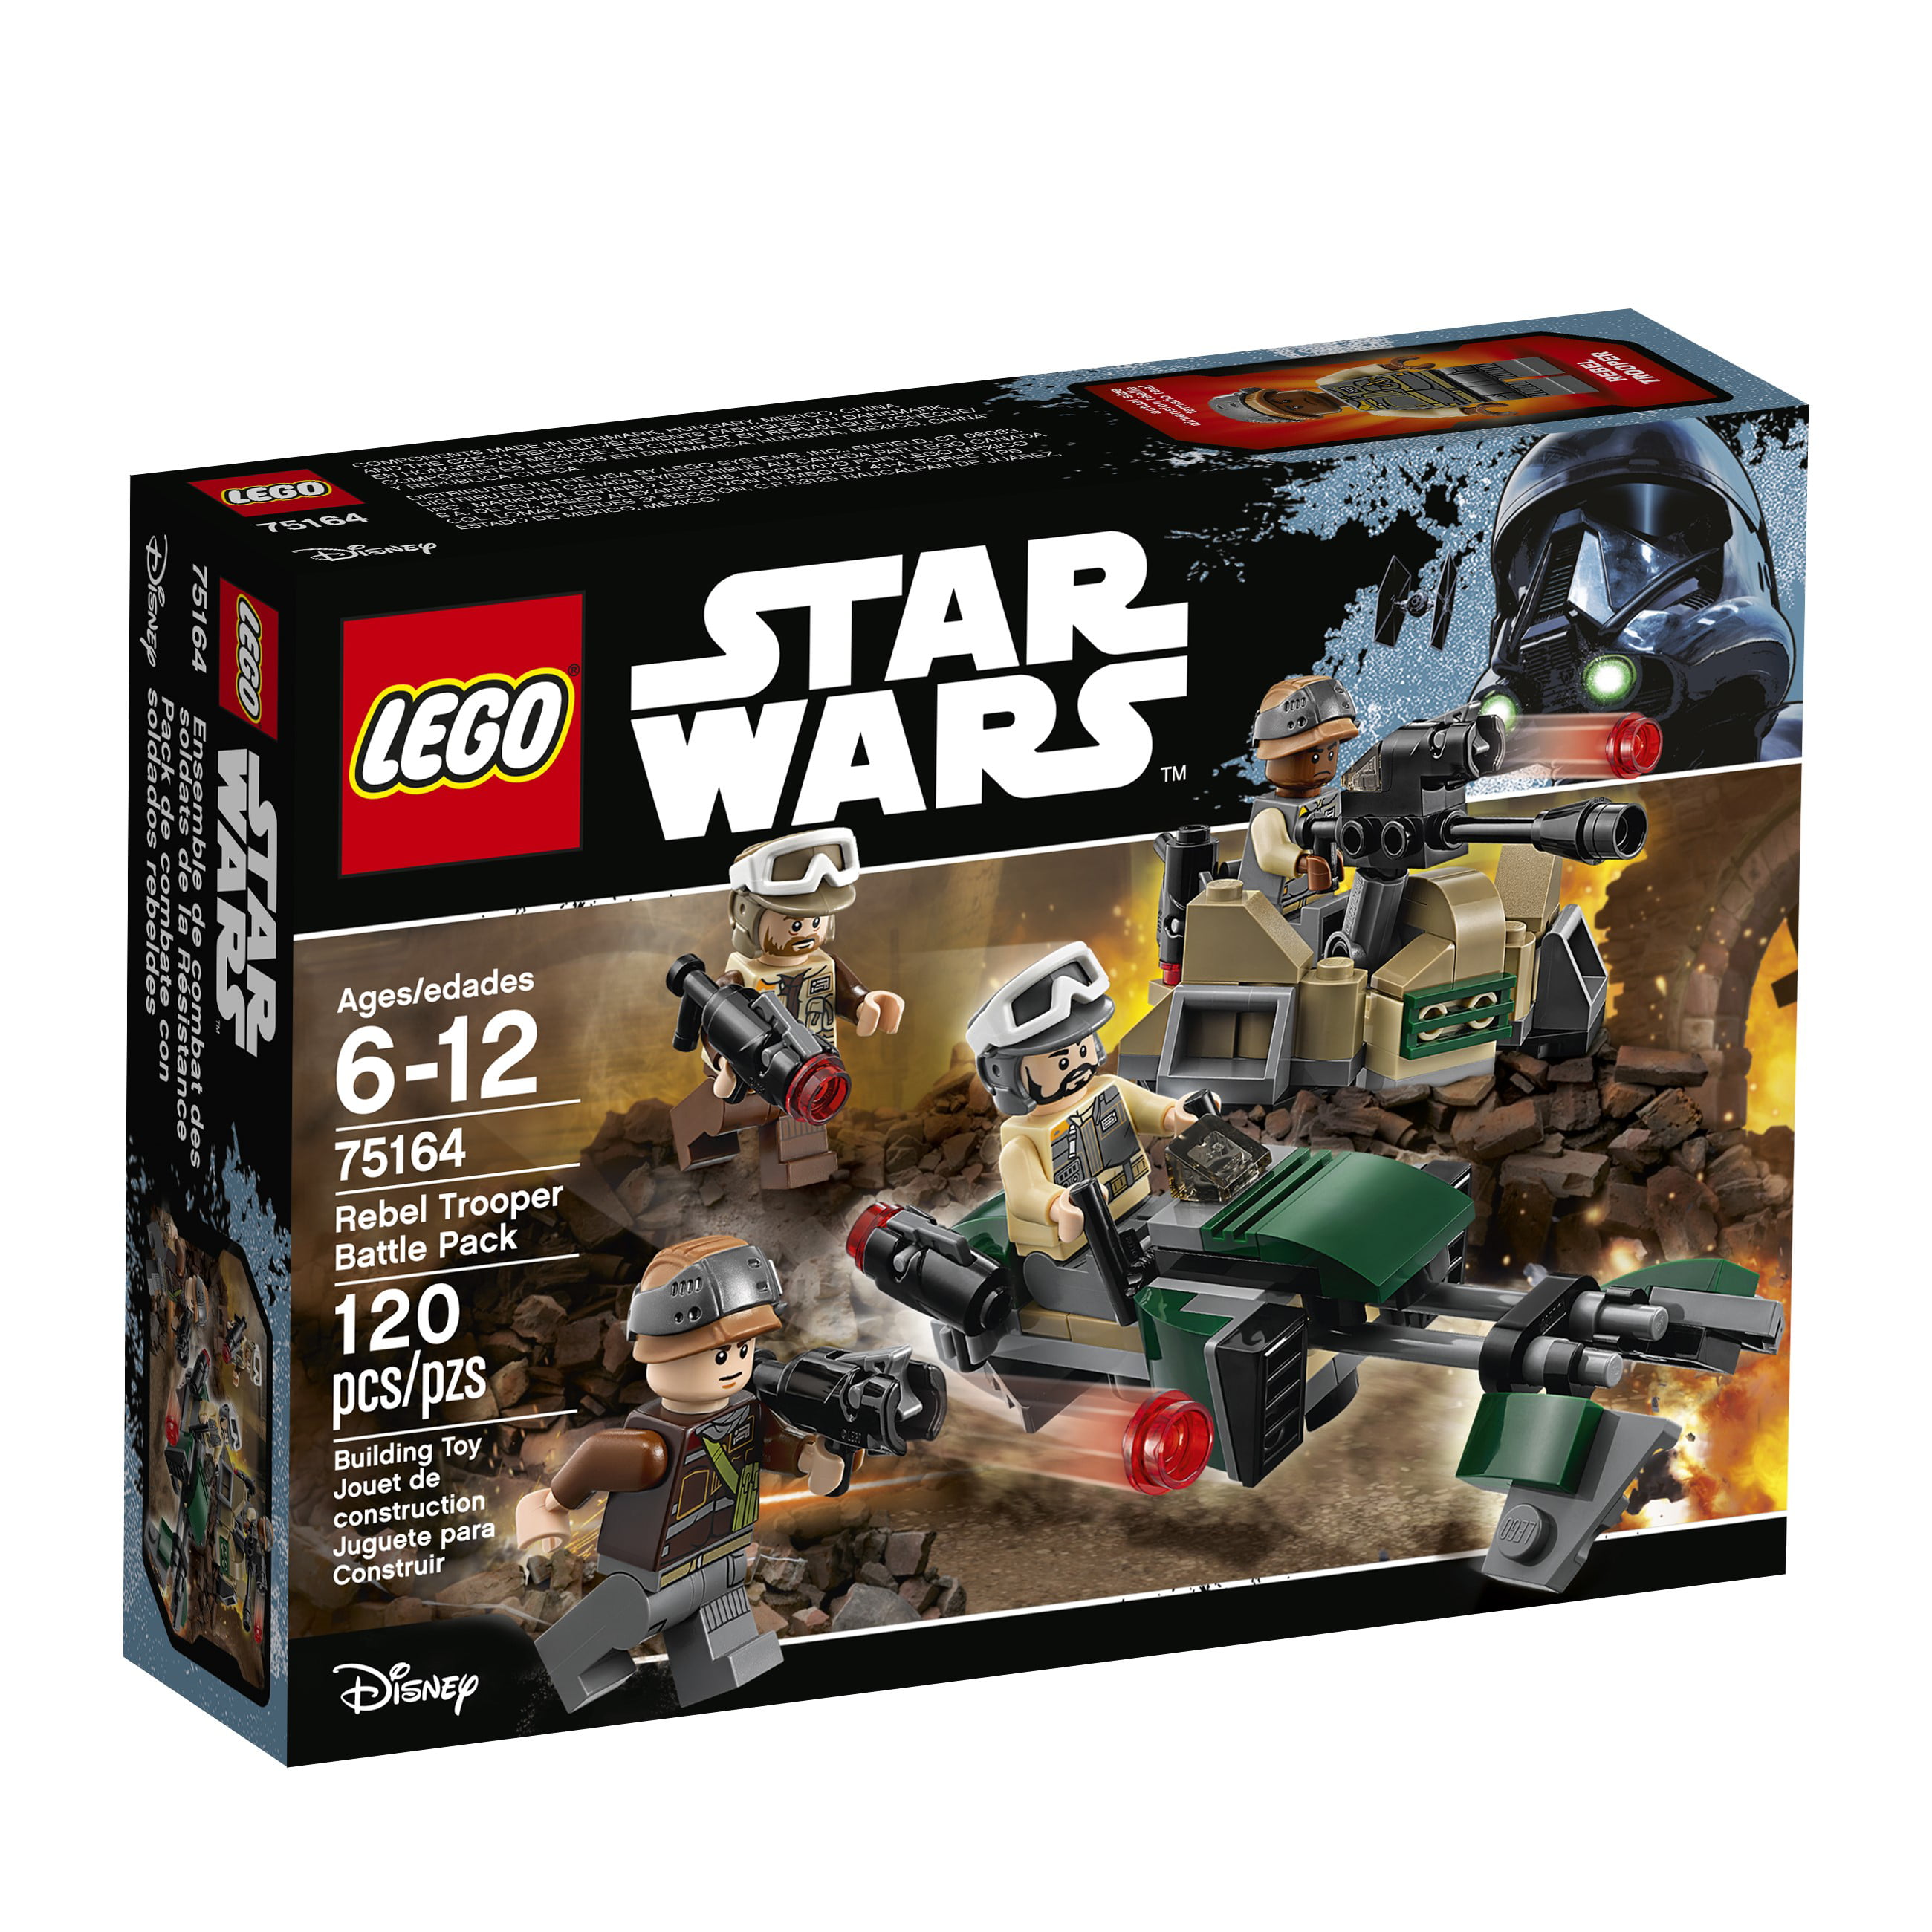 STAR WARS LEGO 8083 REBEL TROOPER BATTLE PACK BRAND NEW SEALED 